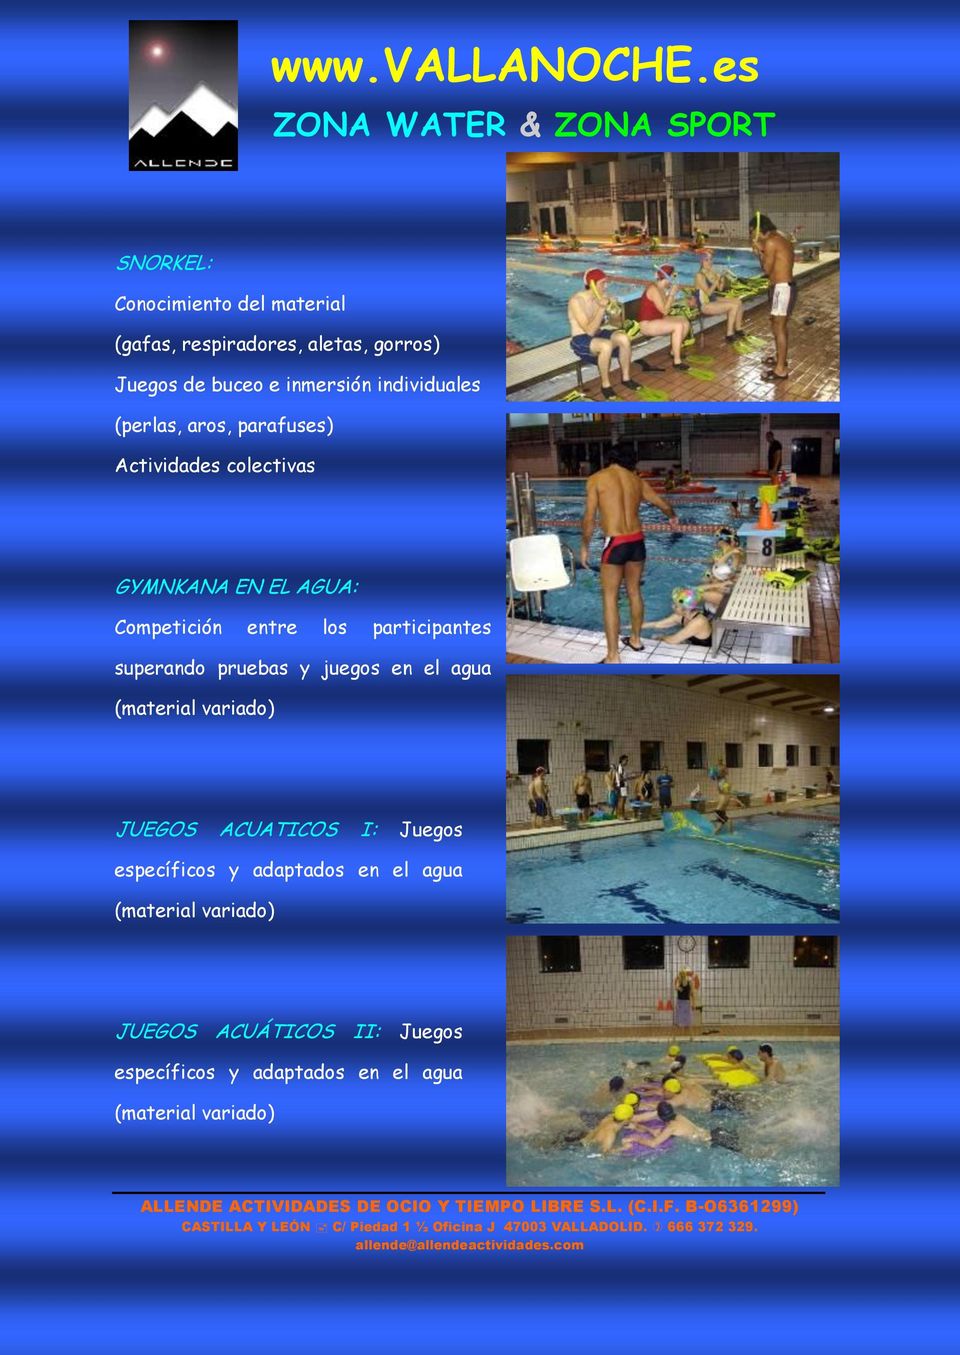 participantes superando pruebas y juegos en el agua (material variado) JUEGOS ACUATICOS I: Juegos específicos